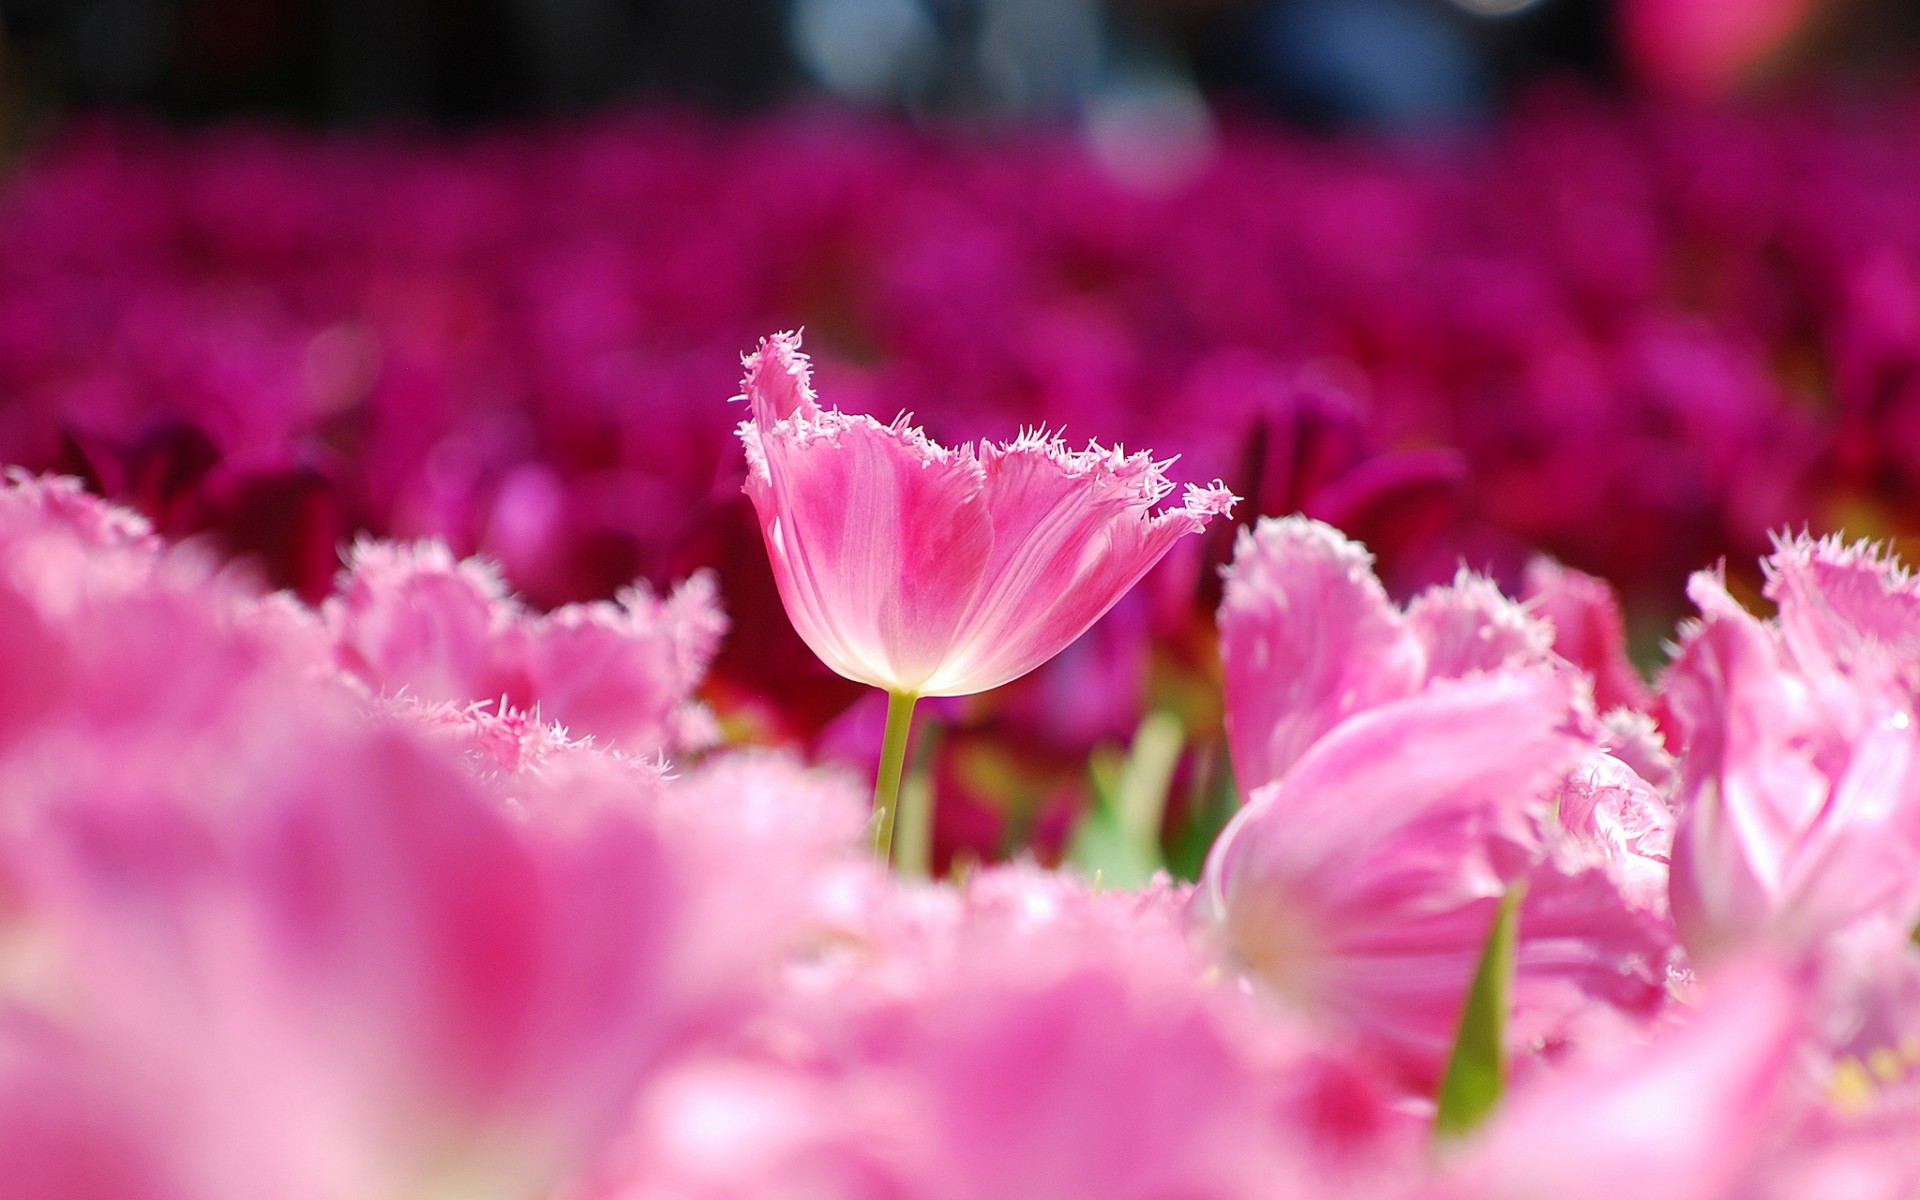 Hãy chiêm ngưỡng những bông hoa tulip mãn nhãn trong hình ảnh này! Sắc đỏ, vàng, trắng và hồng như những mảnh ghép hoàn hảo cùng tạo nên một vẻ đẹp tuyệt vời. Đừng bỏ lỡ cơ hội được chiêm ngưỡng một trong những loại hoa đẹp nhất trong mùa xuân!